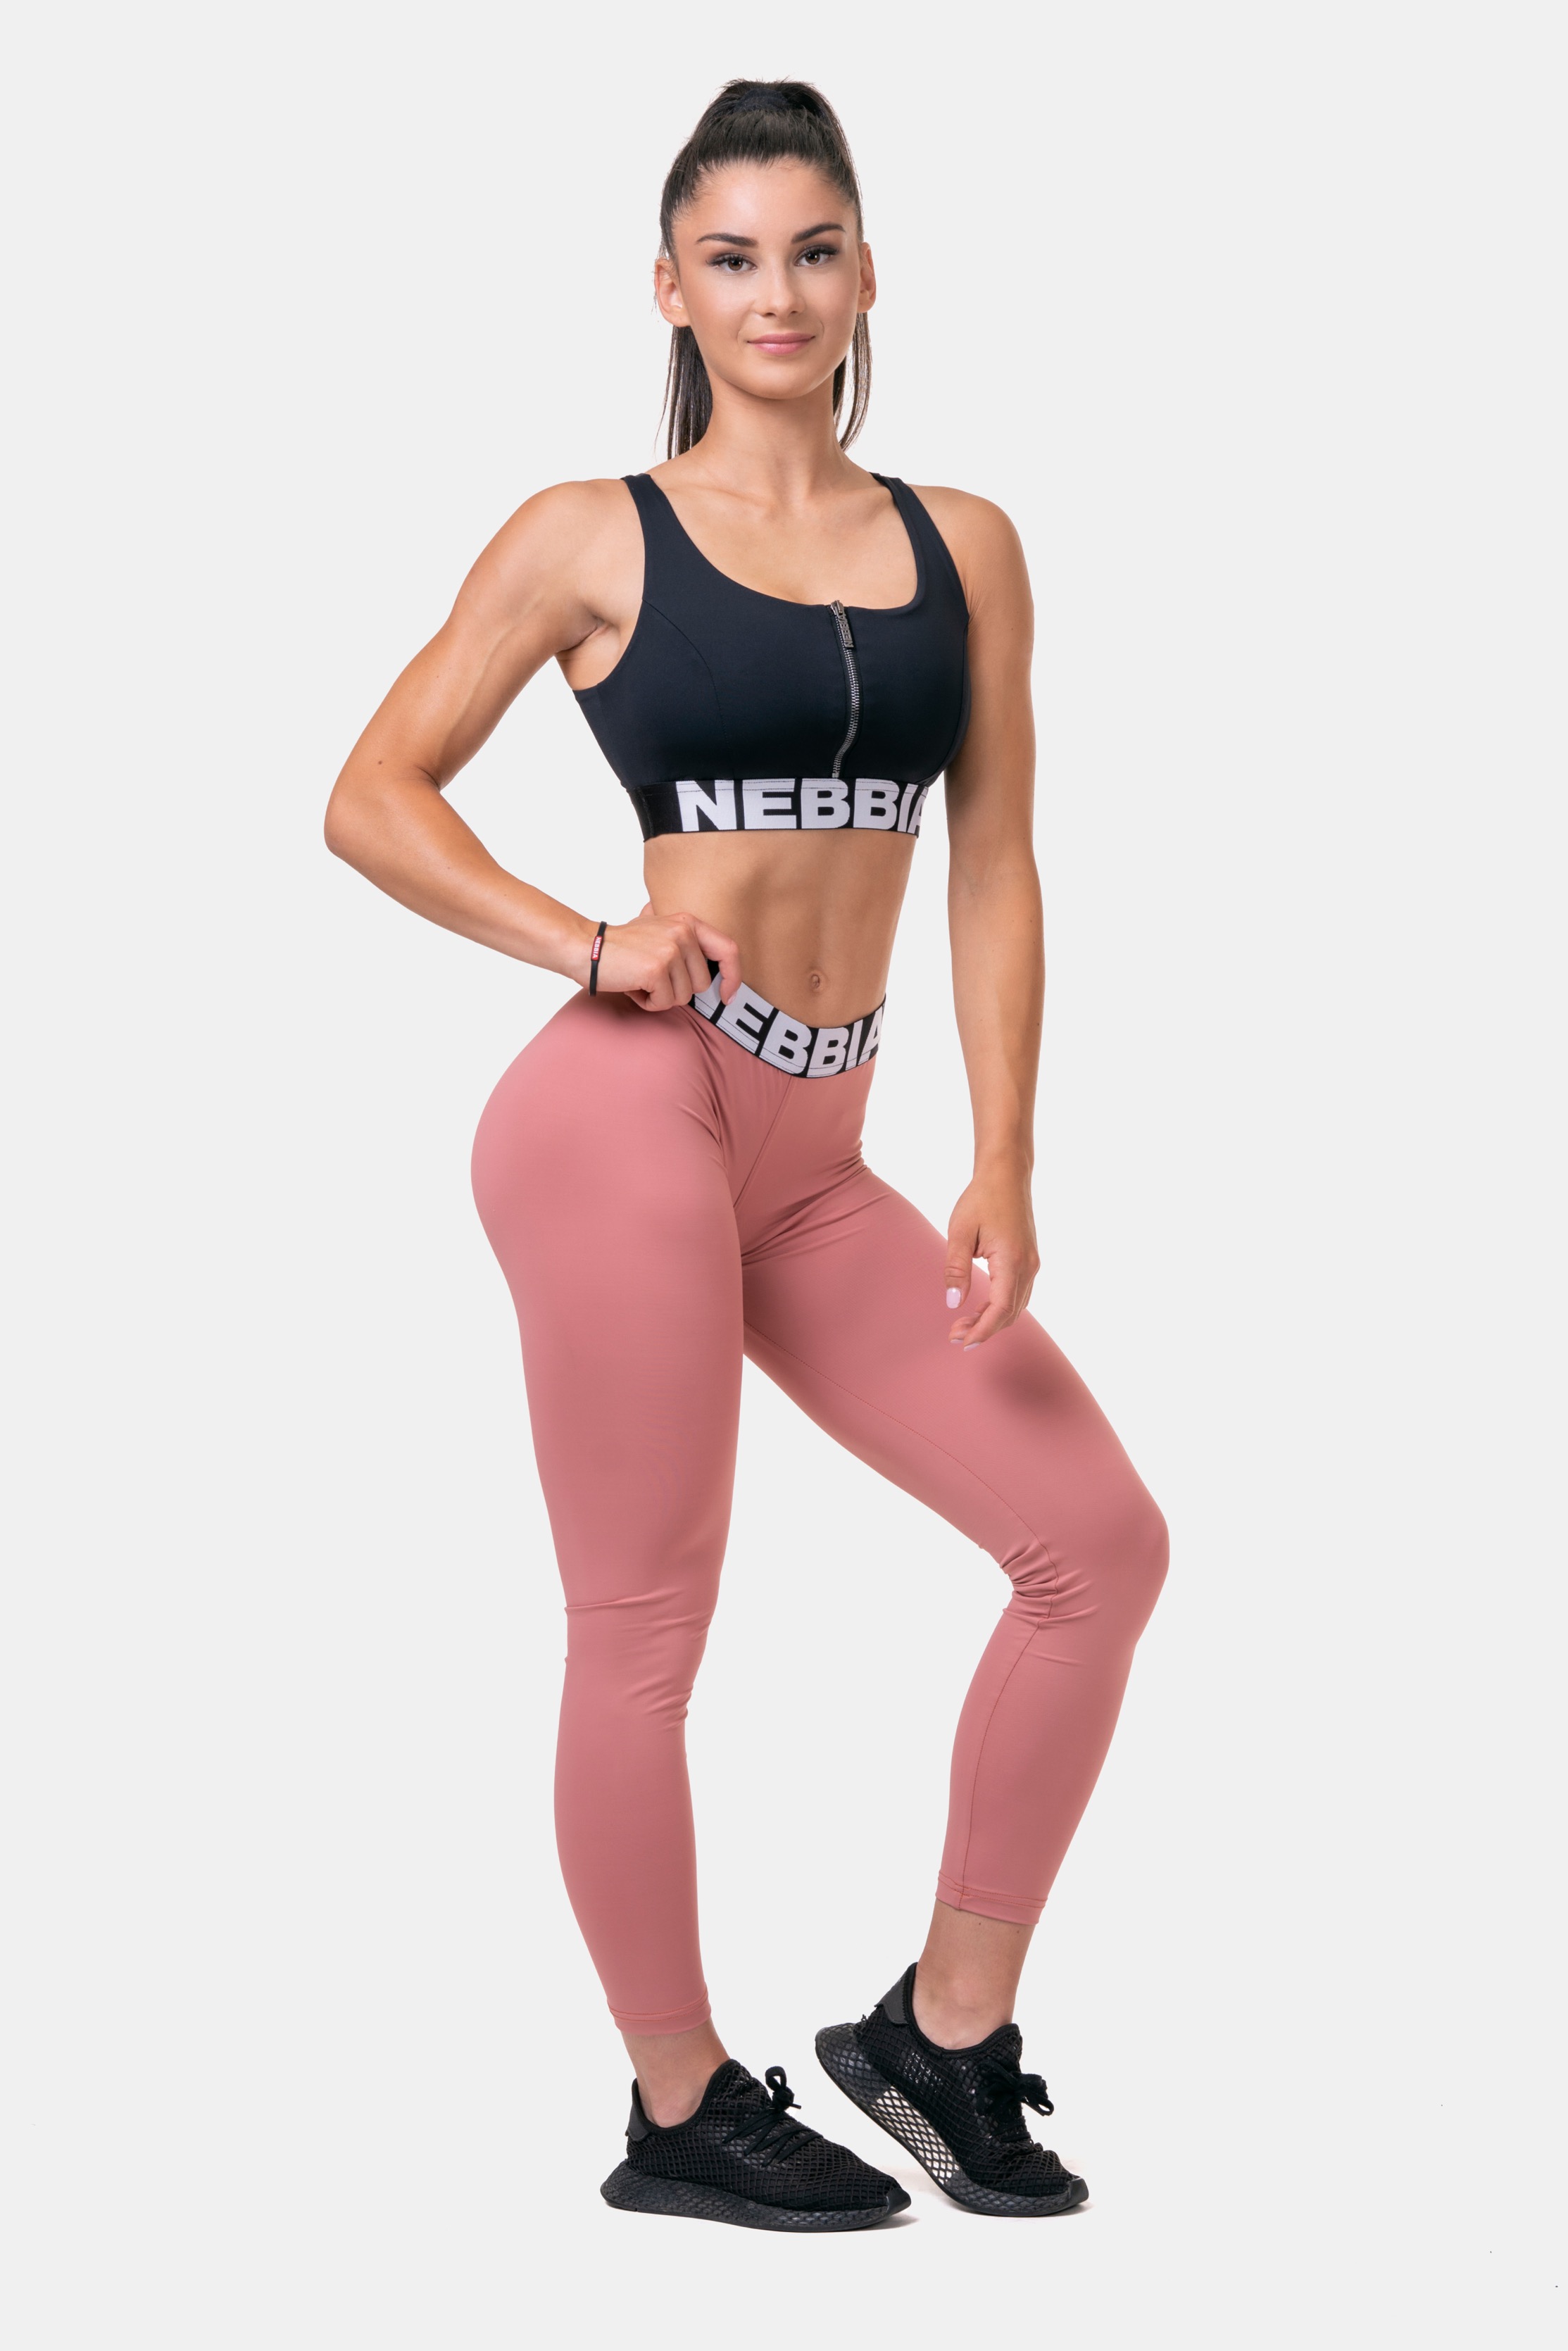 nebbia-scrunch-butt-edz-leggings-squat-hero-571-old-rose